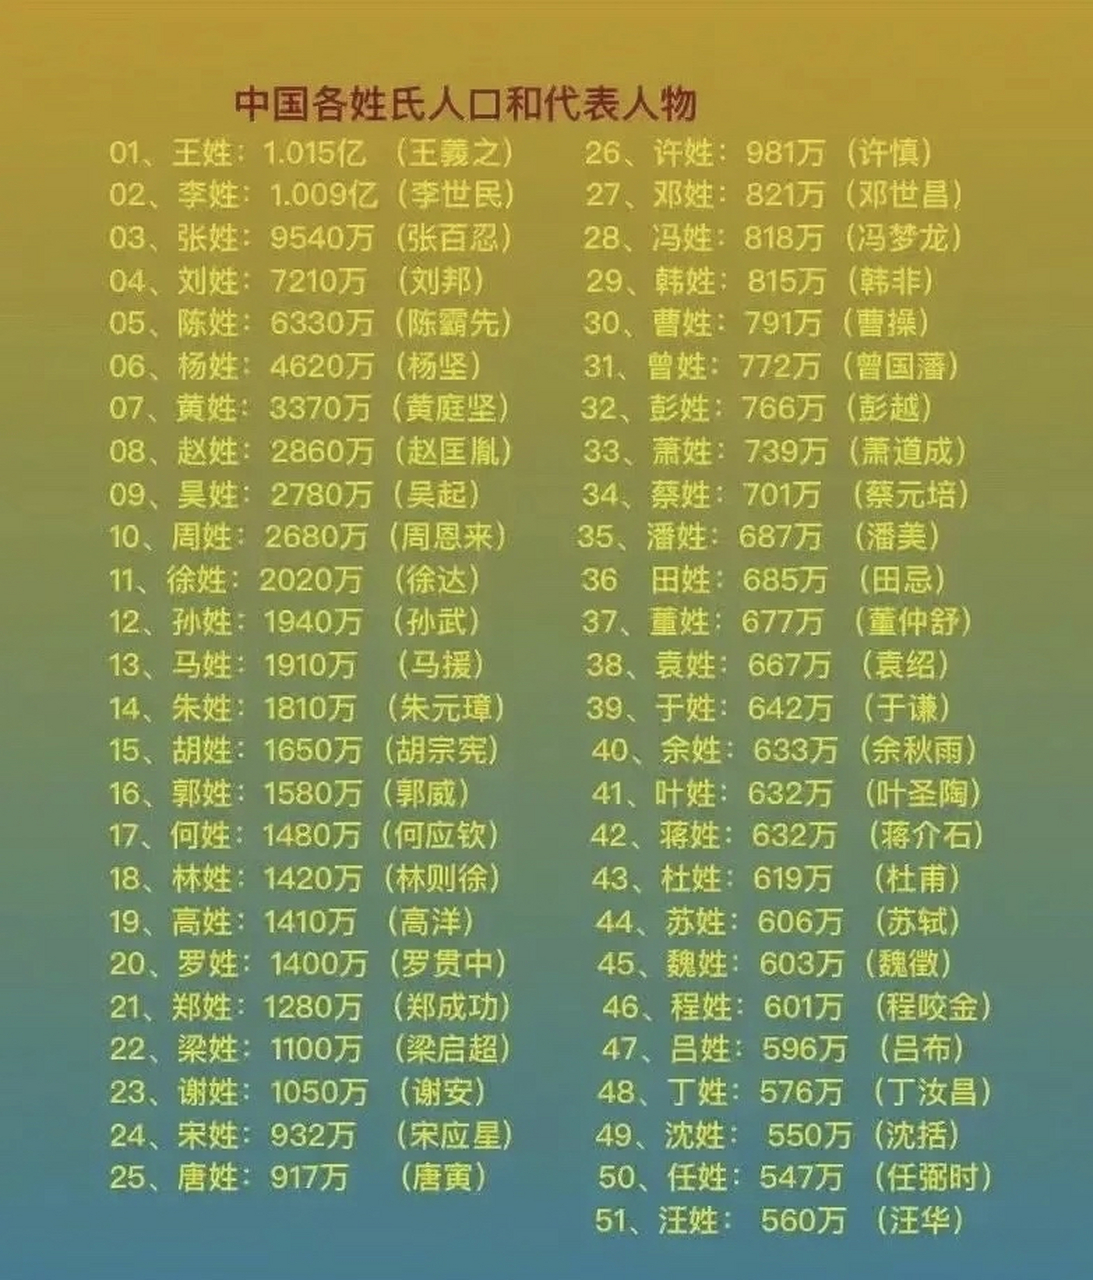 中国人口最多的姓氏图片